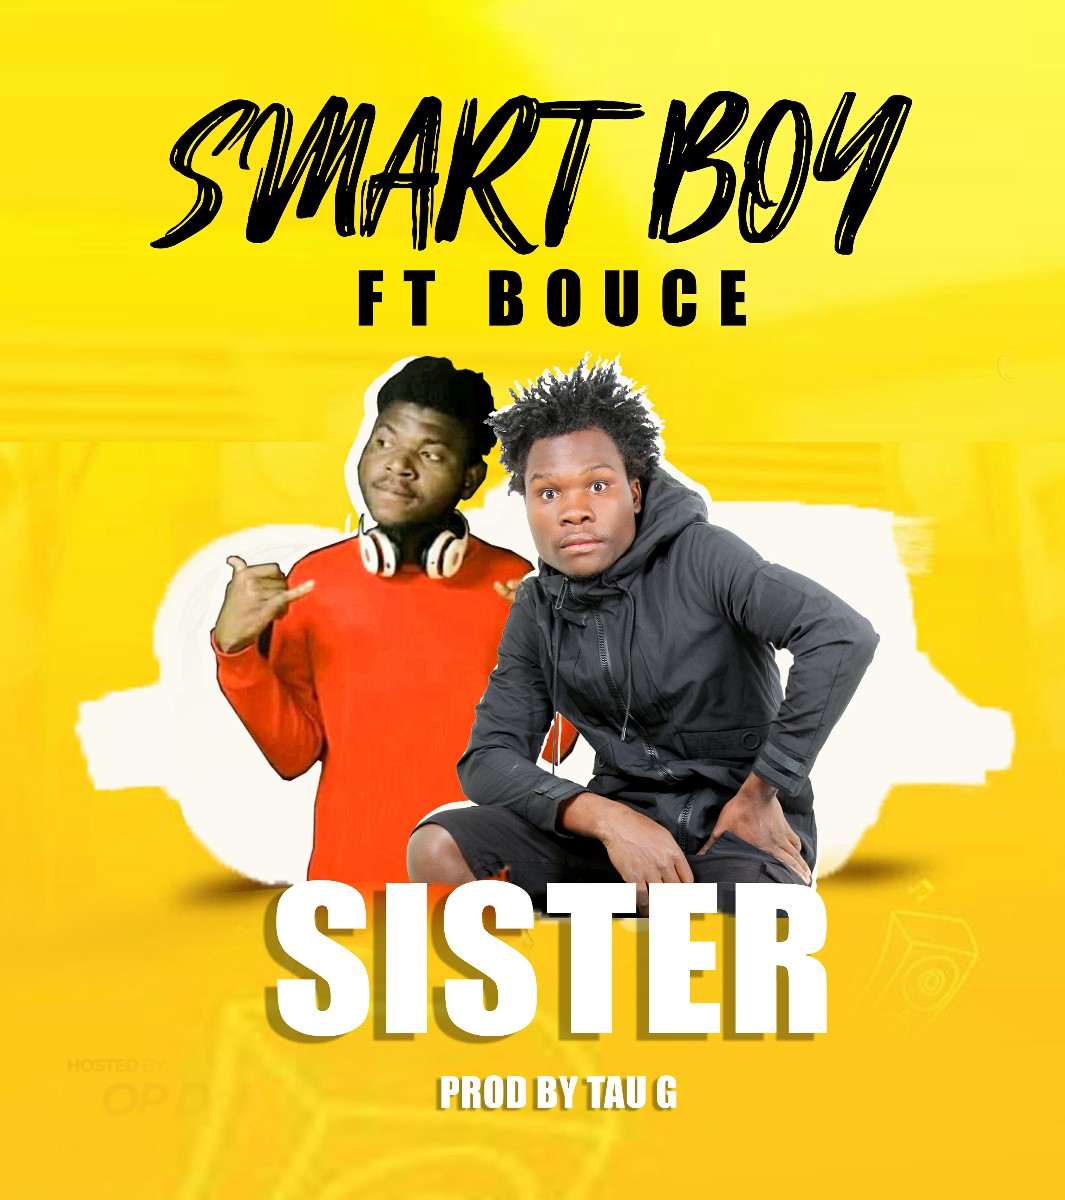 Smart Boy ft. Bouce - Sister